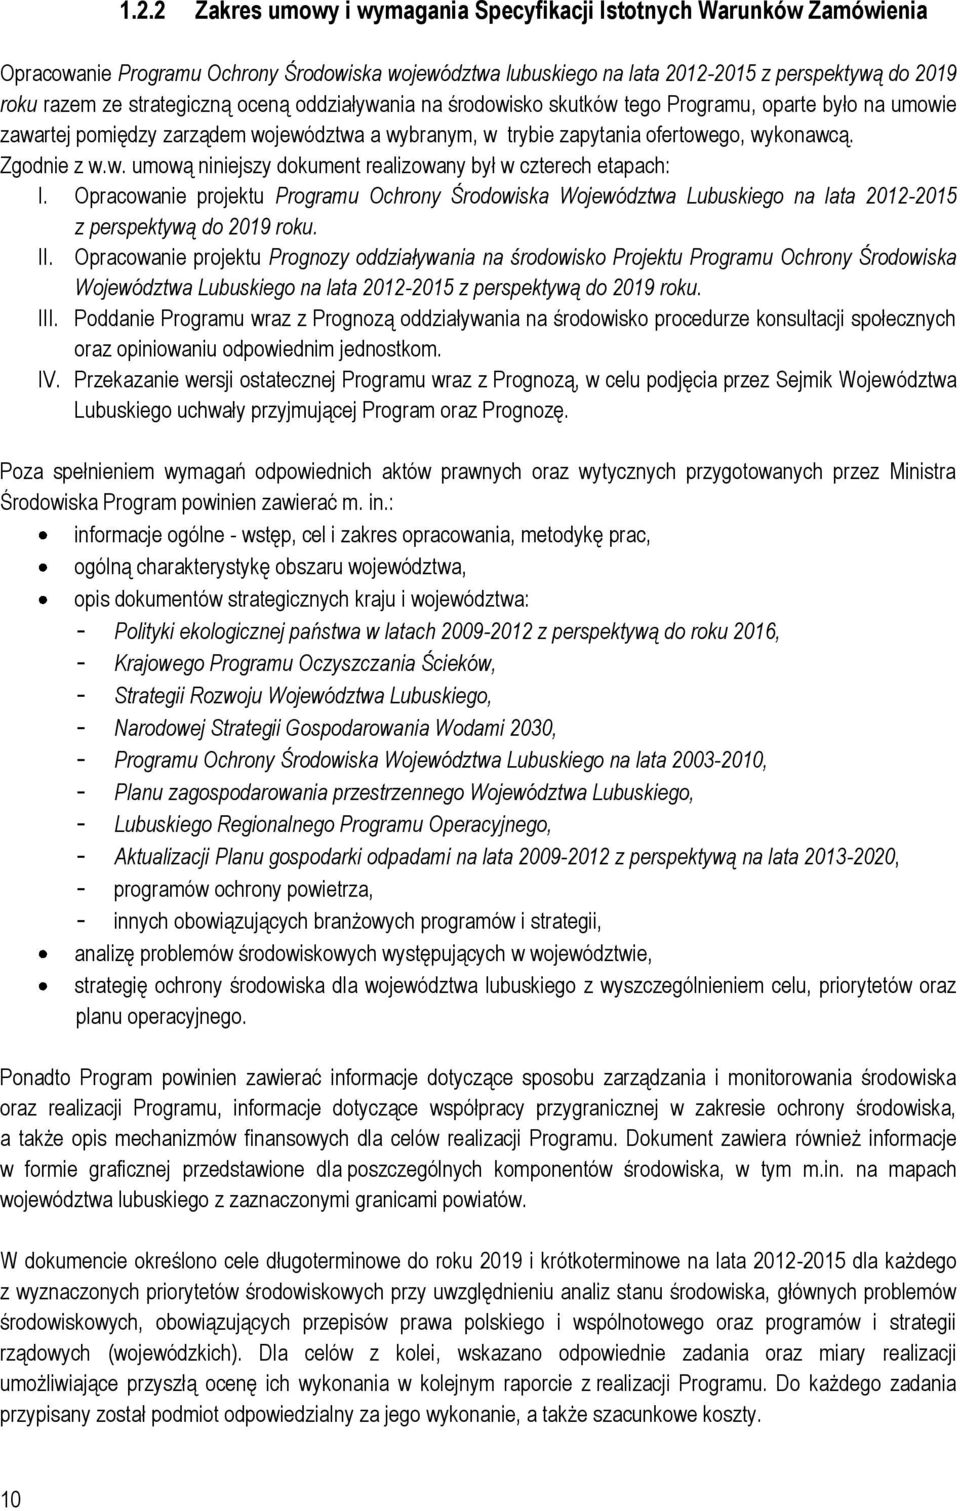 Opracowanie projektu Programu Ochrony Środowiska Województwa Lubuskiego na lata 2012-2015 z perspektywą do 2019 roku. II.